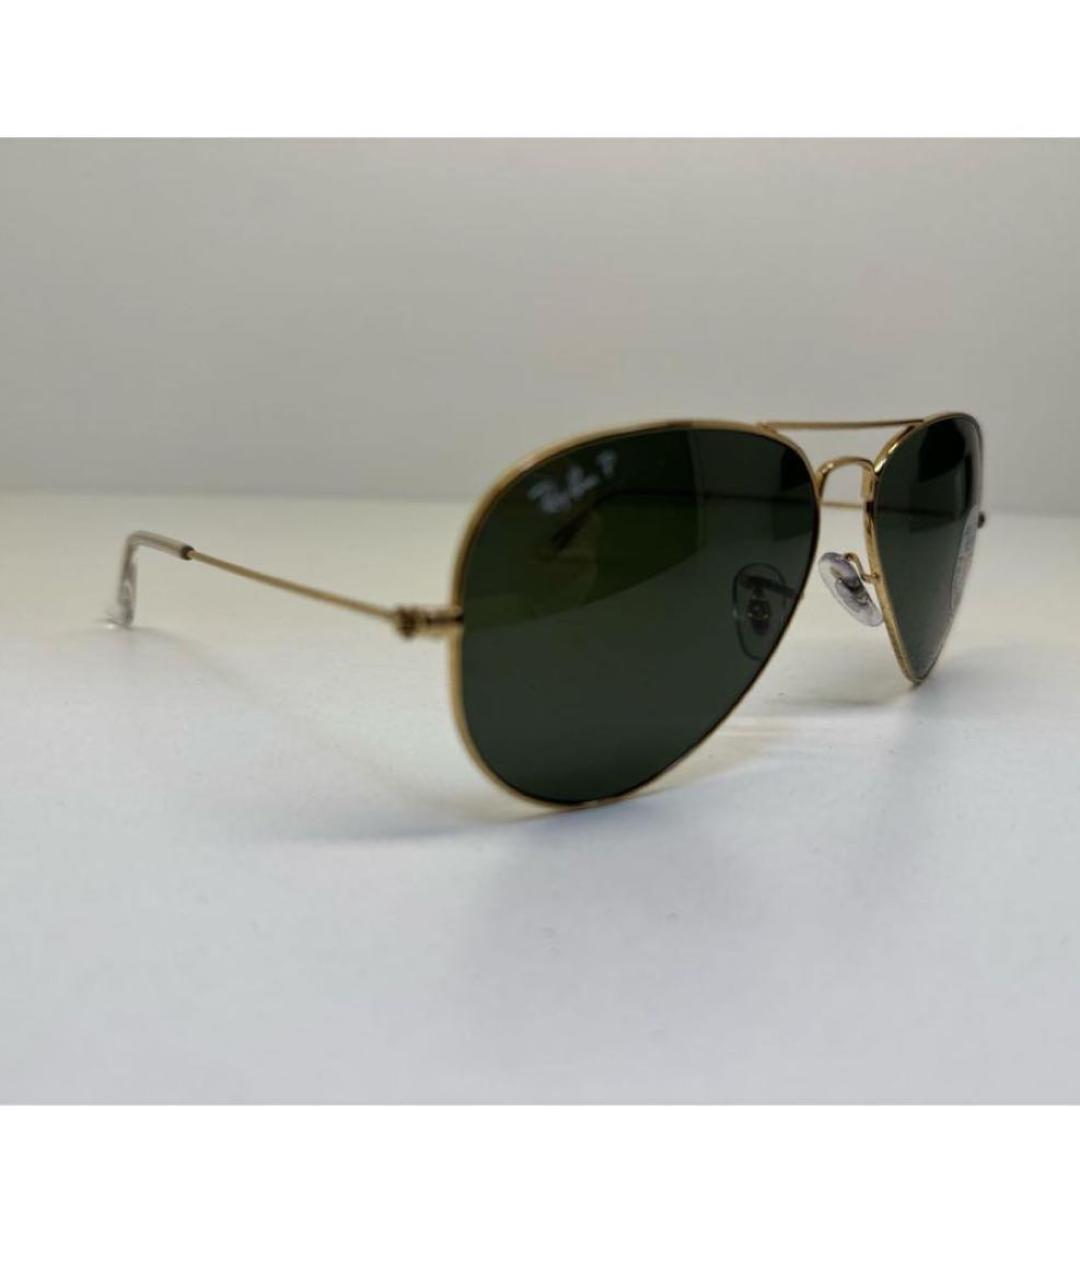 RAY BAN Зеленые металлические солнцезащитные очки, фото 2